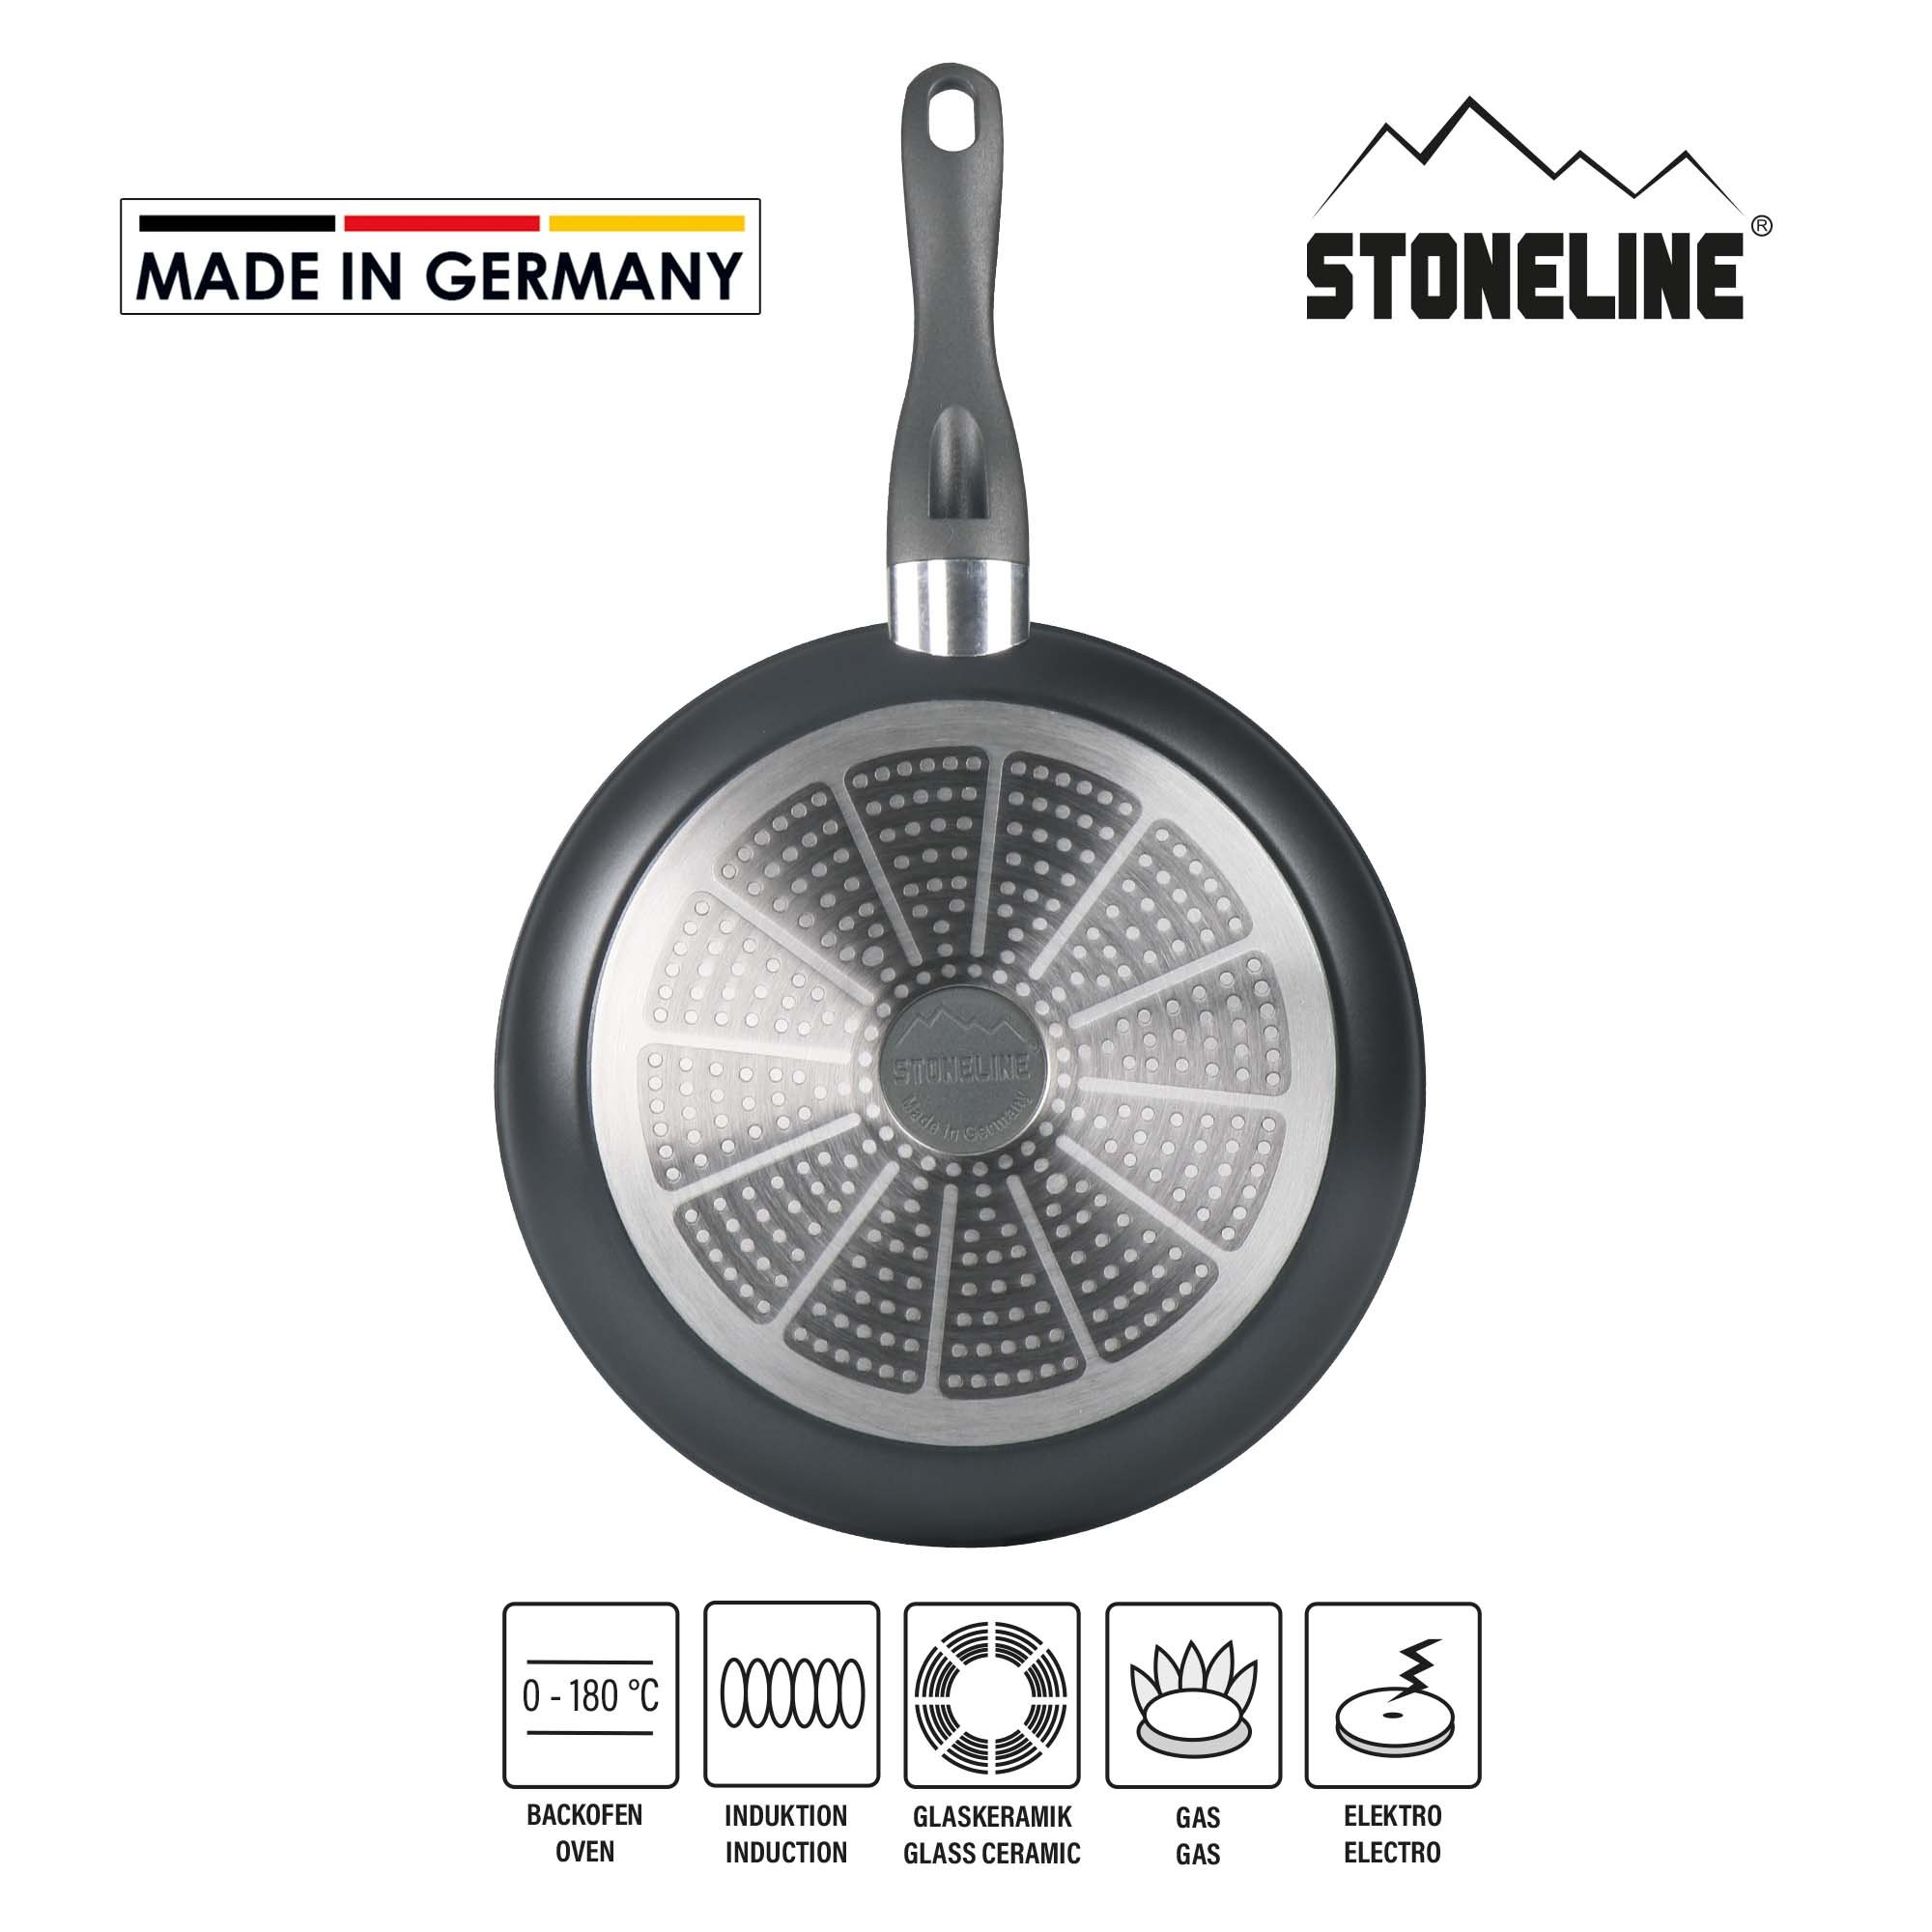 STONELINE® FRESH Bratpfanne 28 cm, Made in Germany, antihaftbeschichtet, Induktion und backofengeeignet